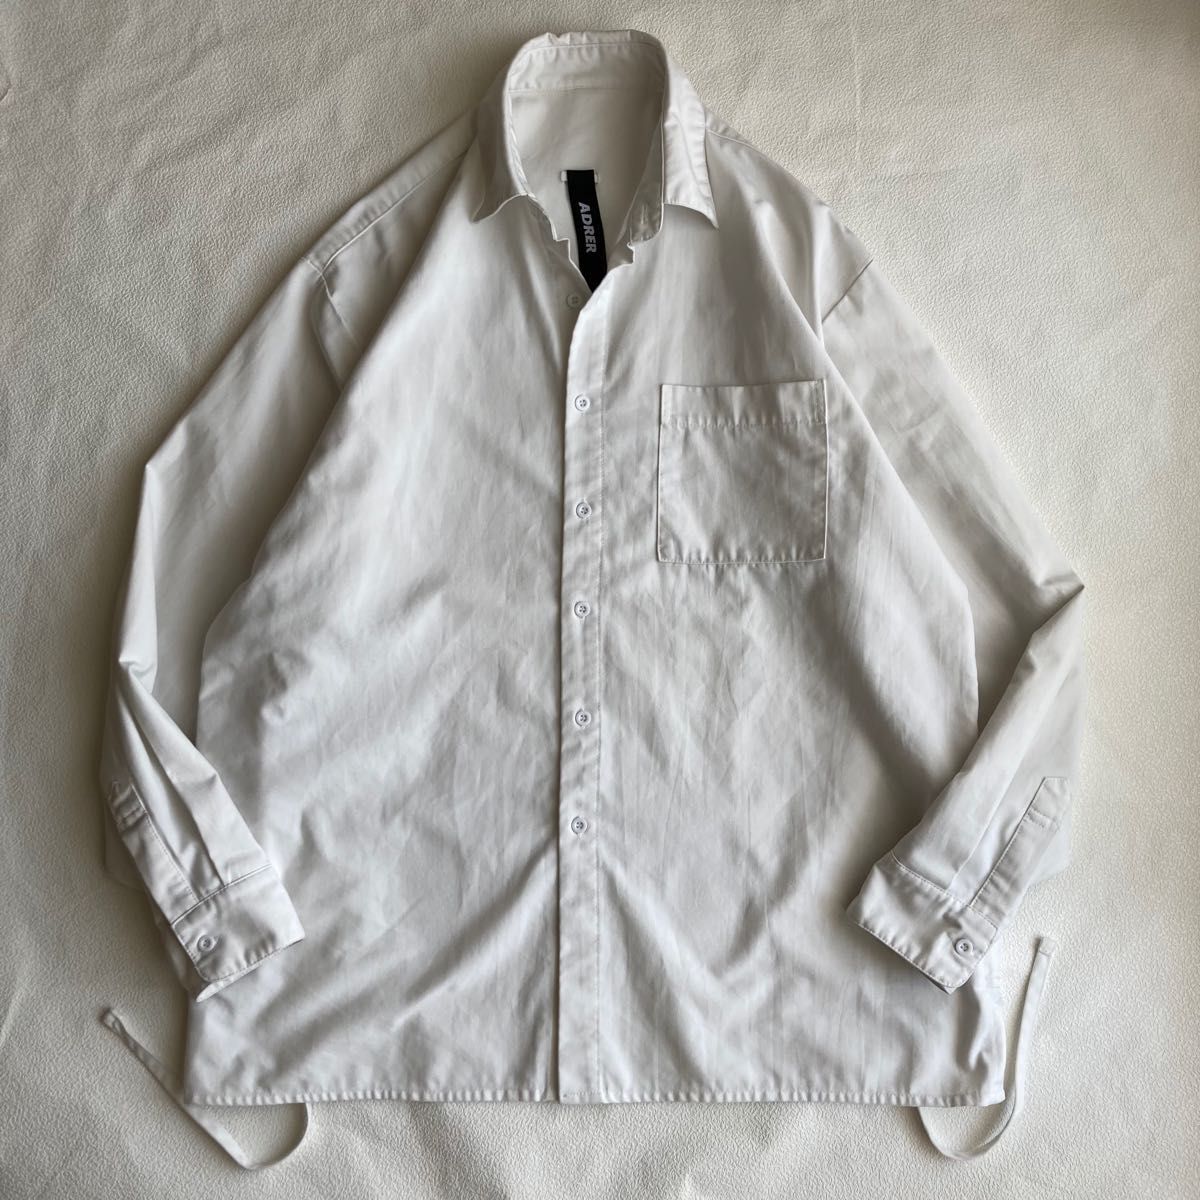 モンクレール 新品ダウン シャツジャケット サイズ1 白 ホワイト 